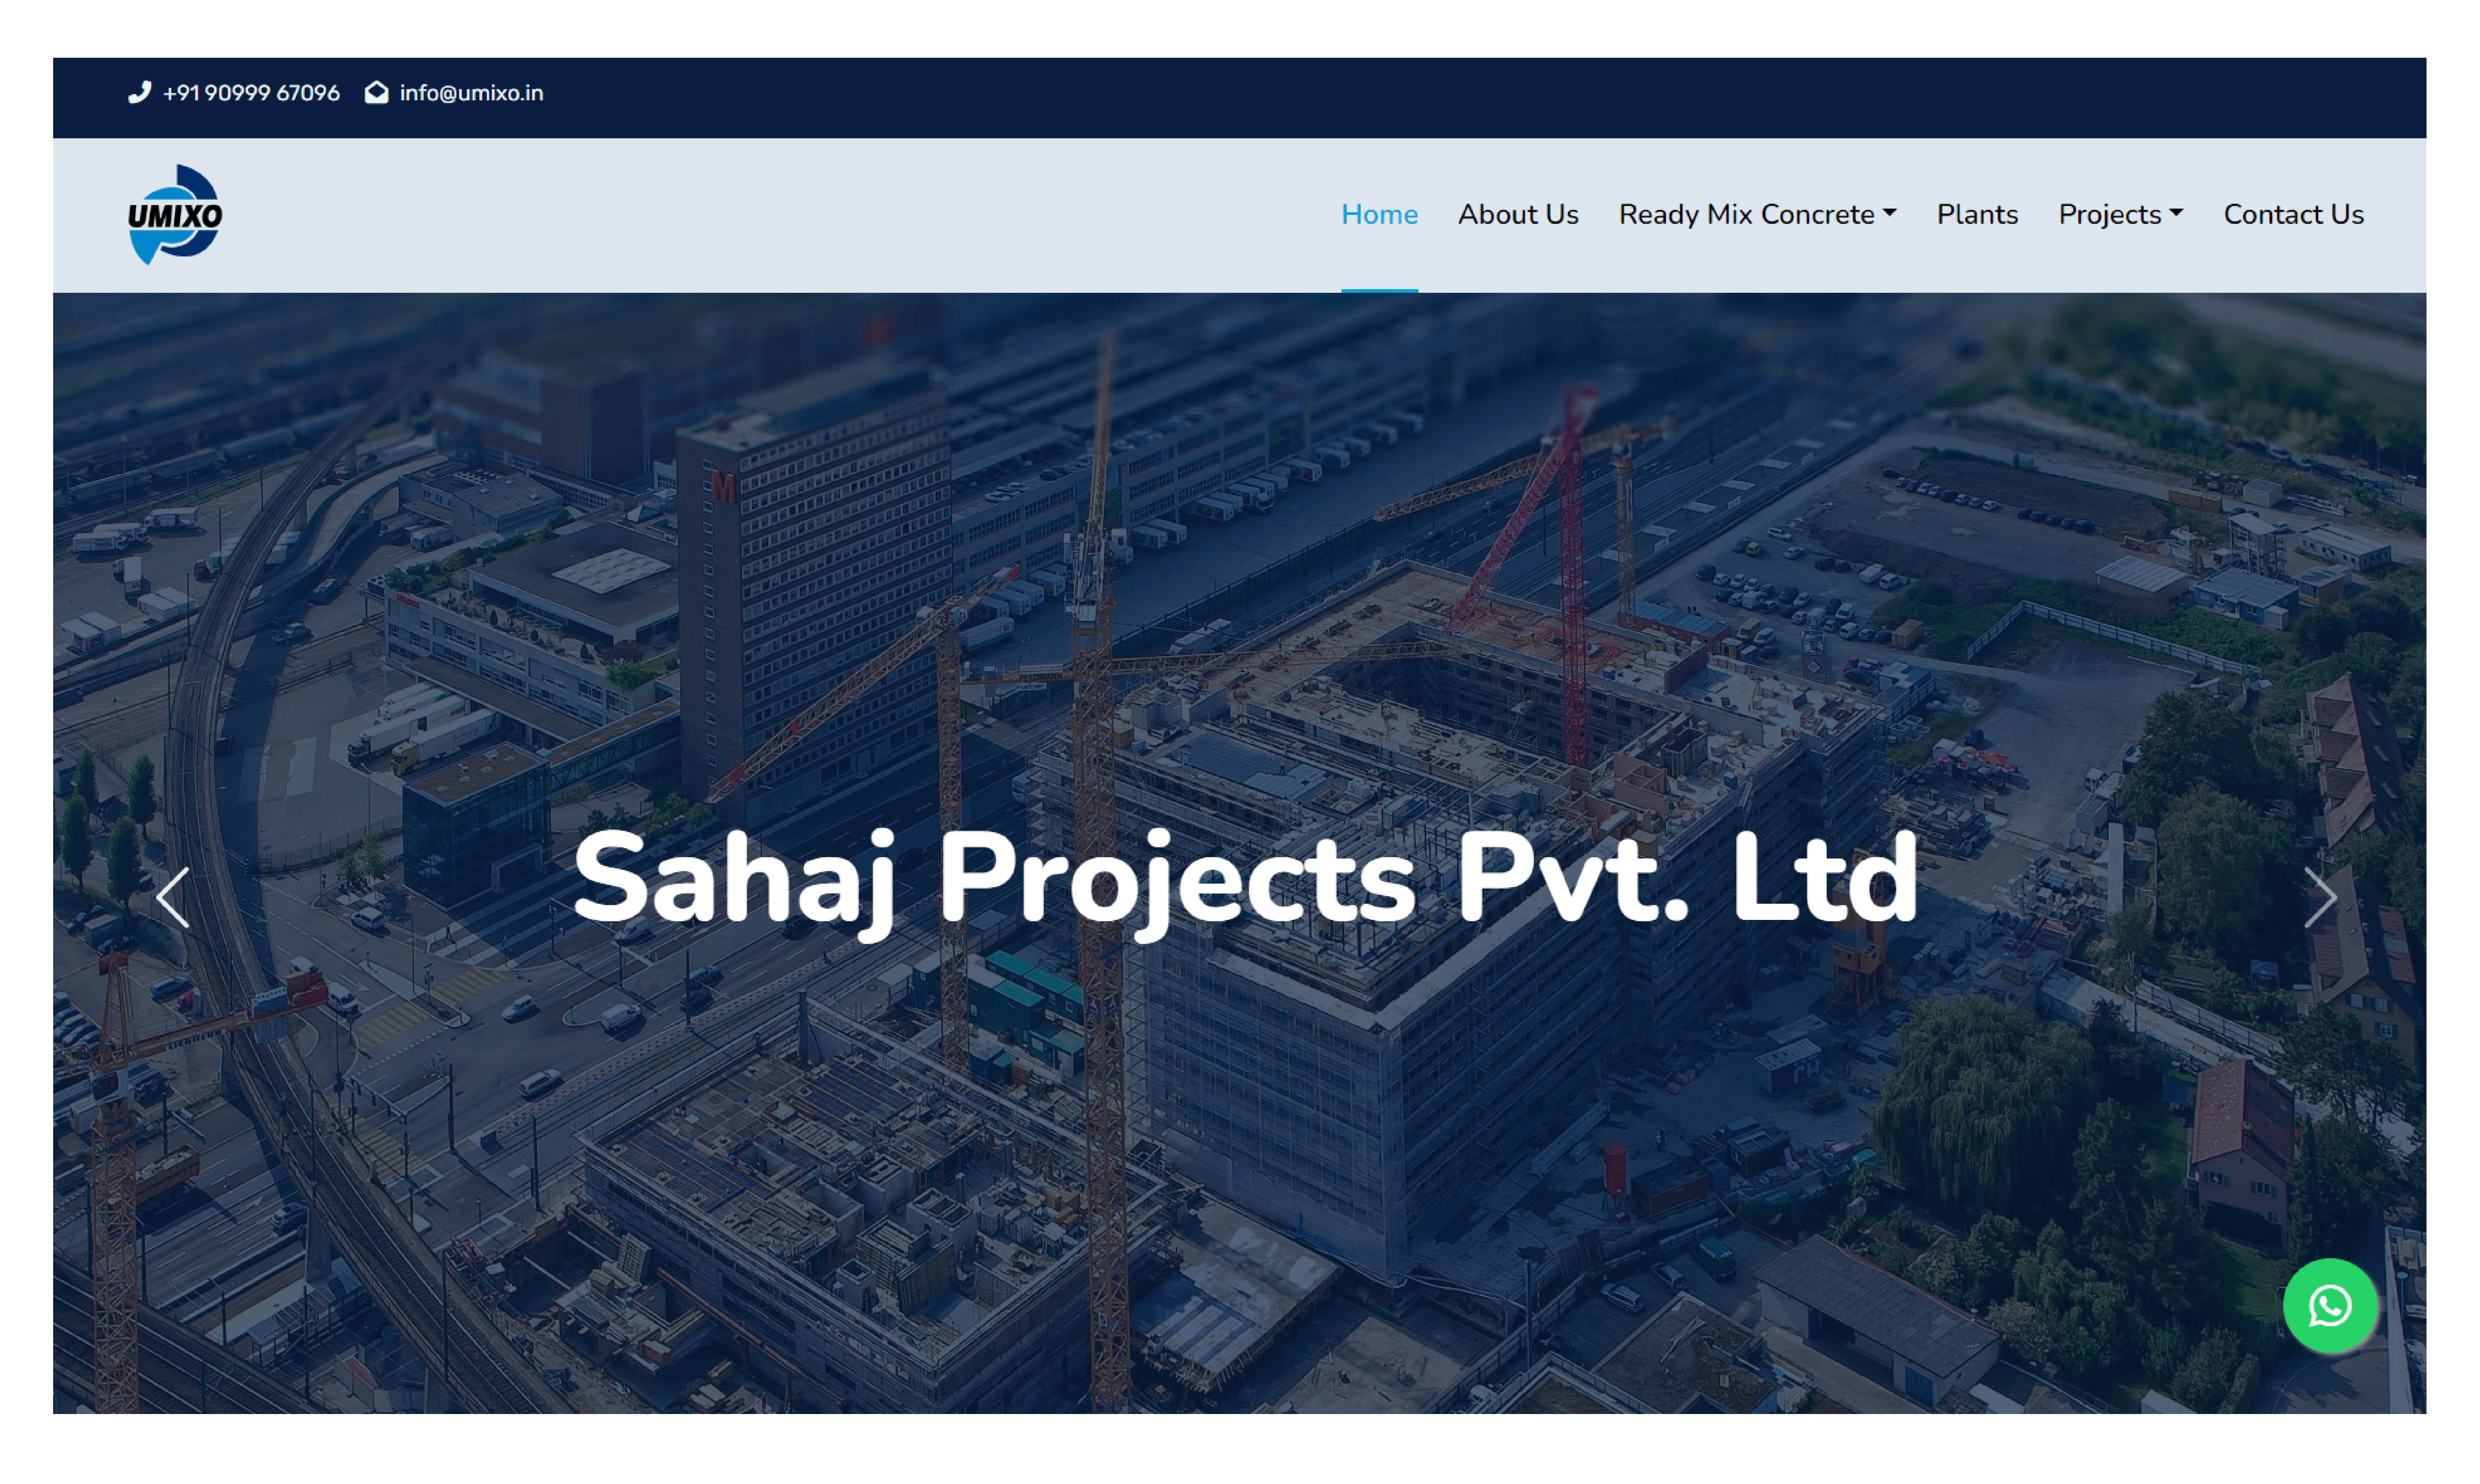 Sahaj Projects Pvt. Ltd